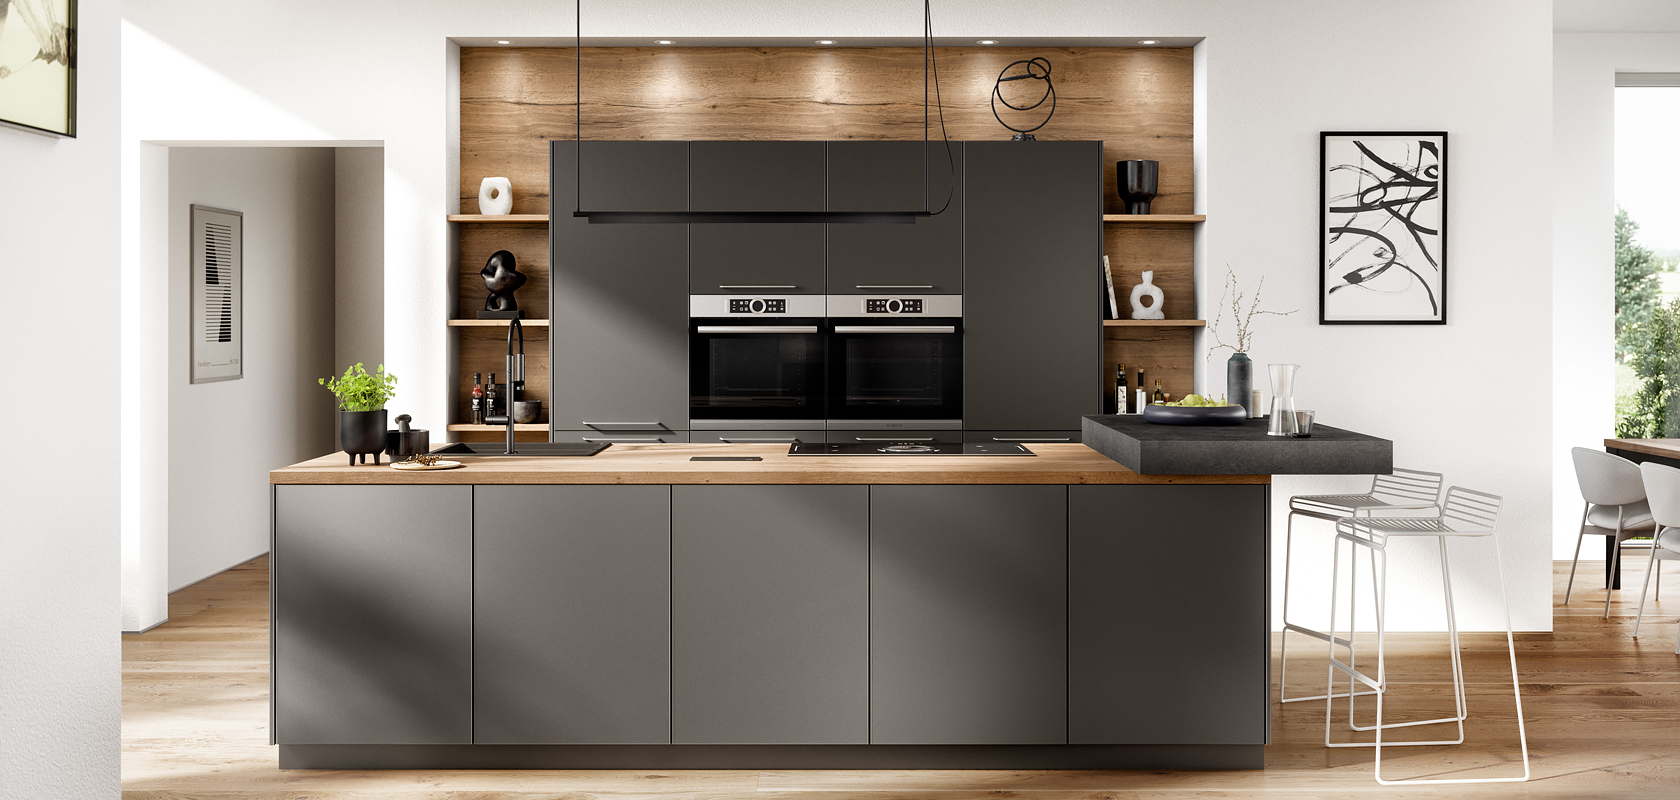 Interni di cucina moderna con eleganti armadi scuri, elettrodomestici incorporati e dettagli in legno, che fondono funzionalità e stile in un design luminoso e minimalista per la casa.